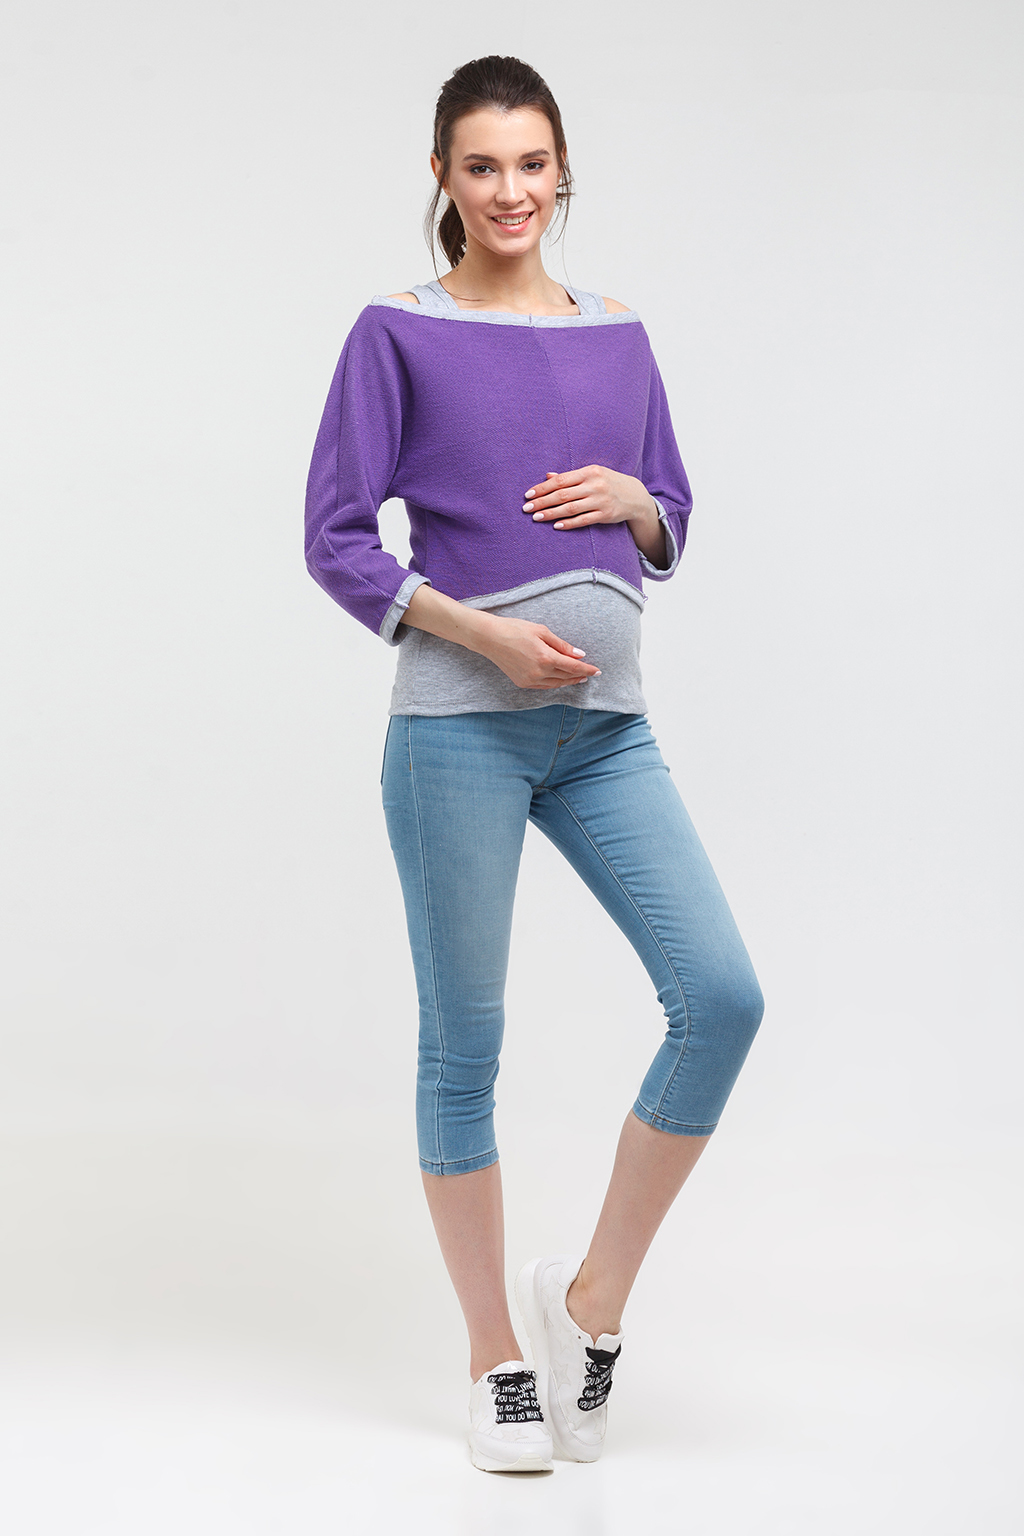 Можно ли поднимать тяжести беременным - какой вес допустимо поднимать будущей маме